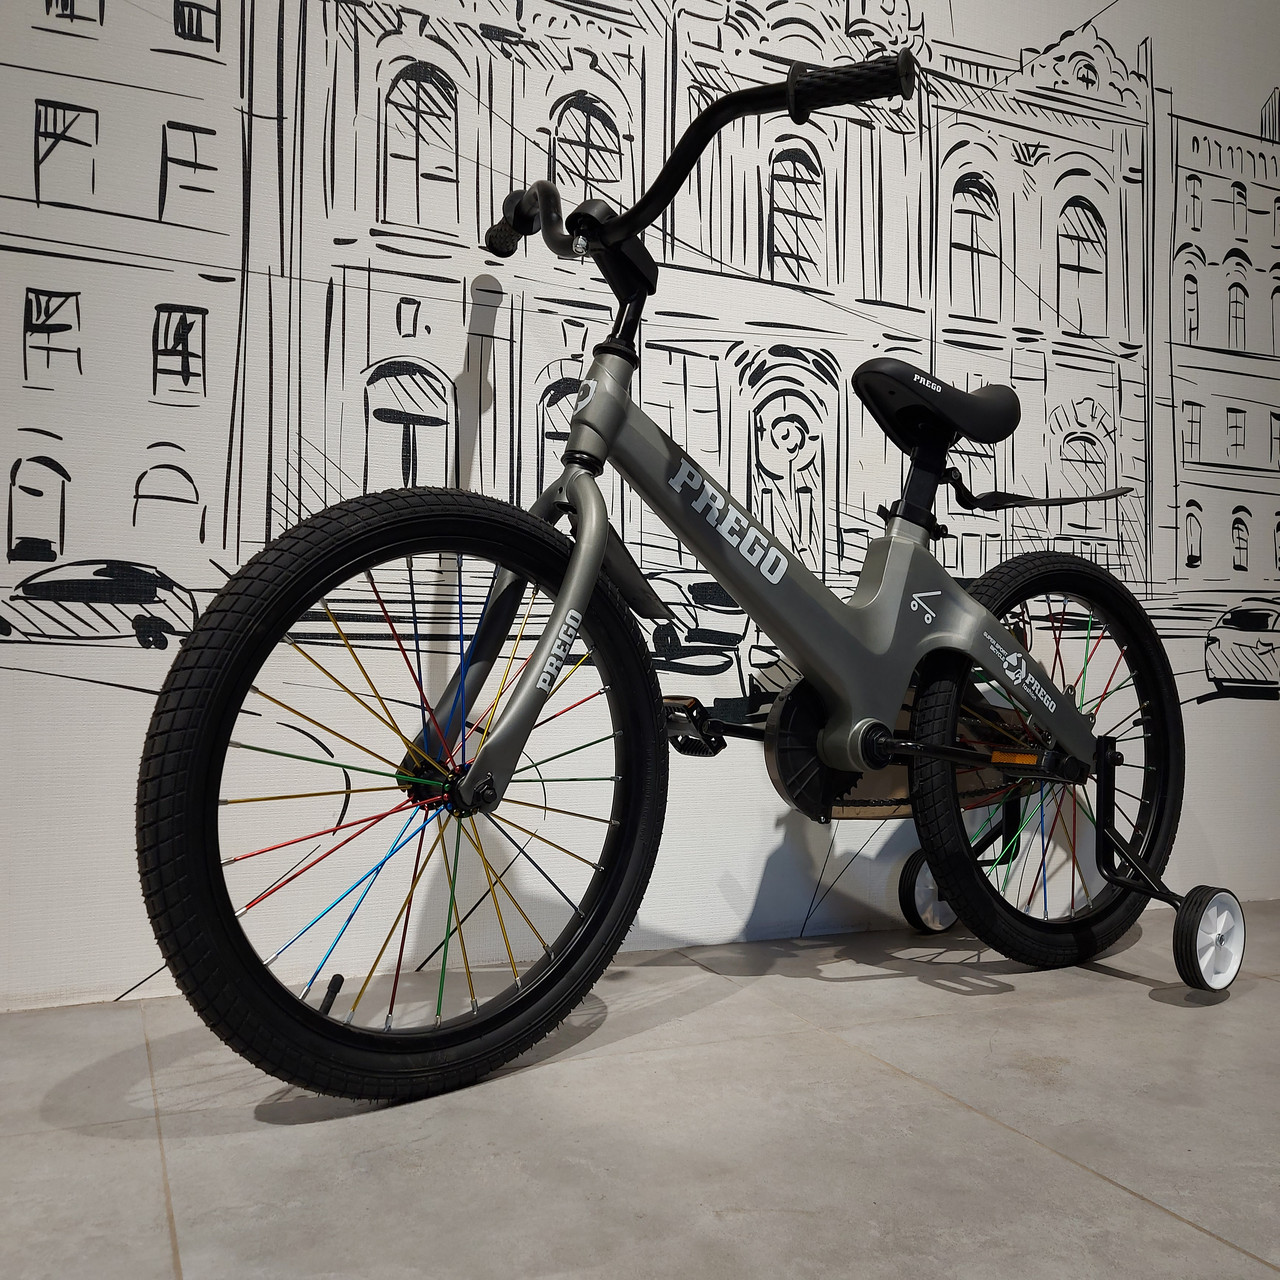 Детский двухколесный велосипед "Prego". Версия 2.0. 20" колеса. С боковыми колесами. Серый.